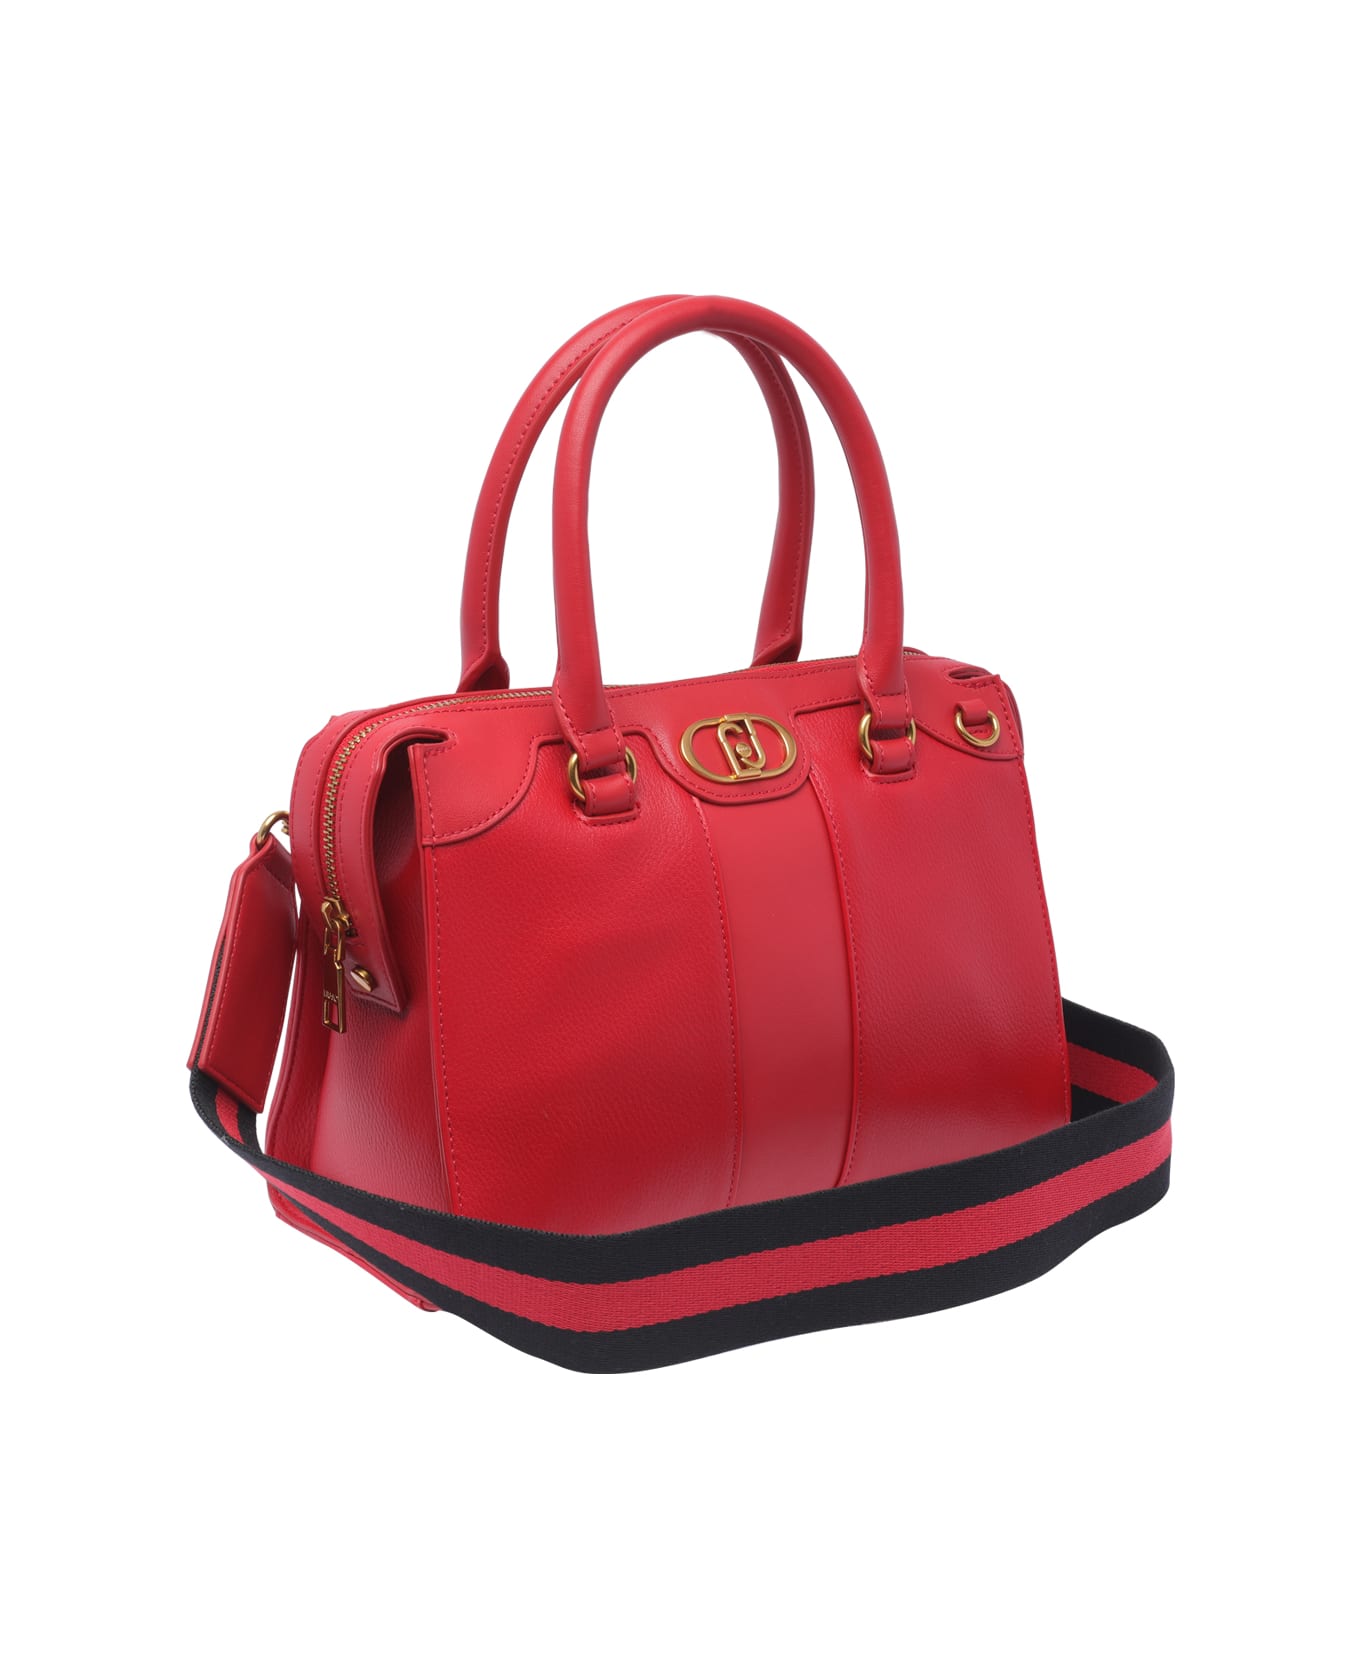 Liu-Jo Logo Handbag - Red トートバッグ